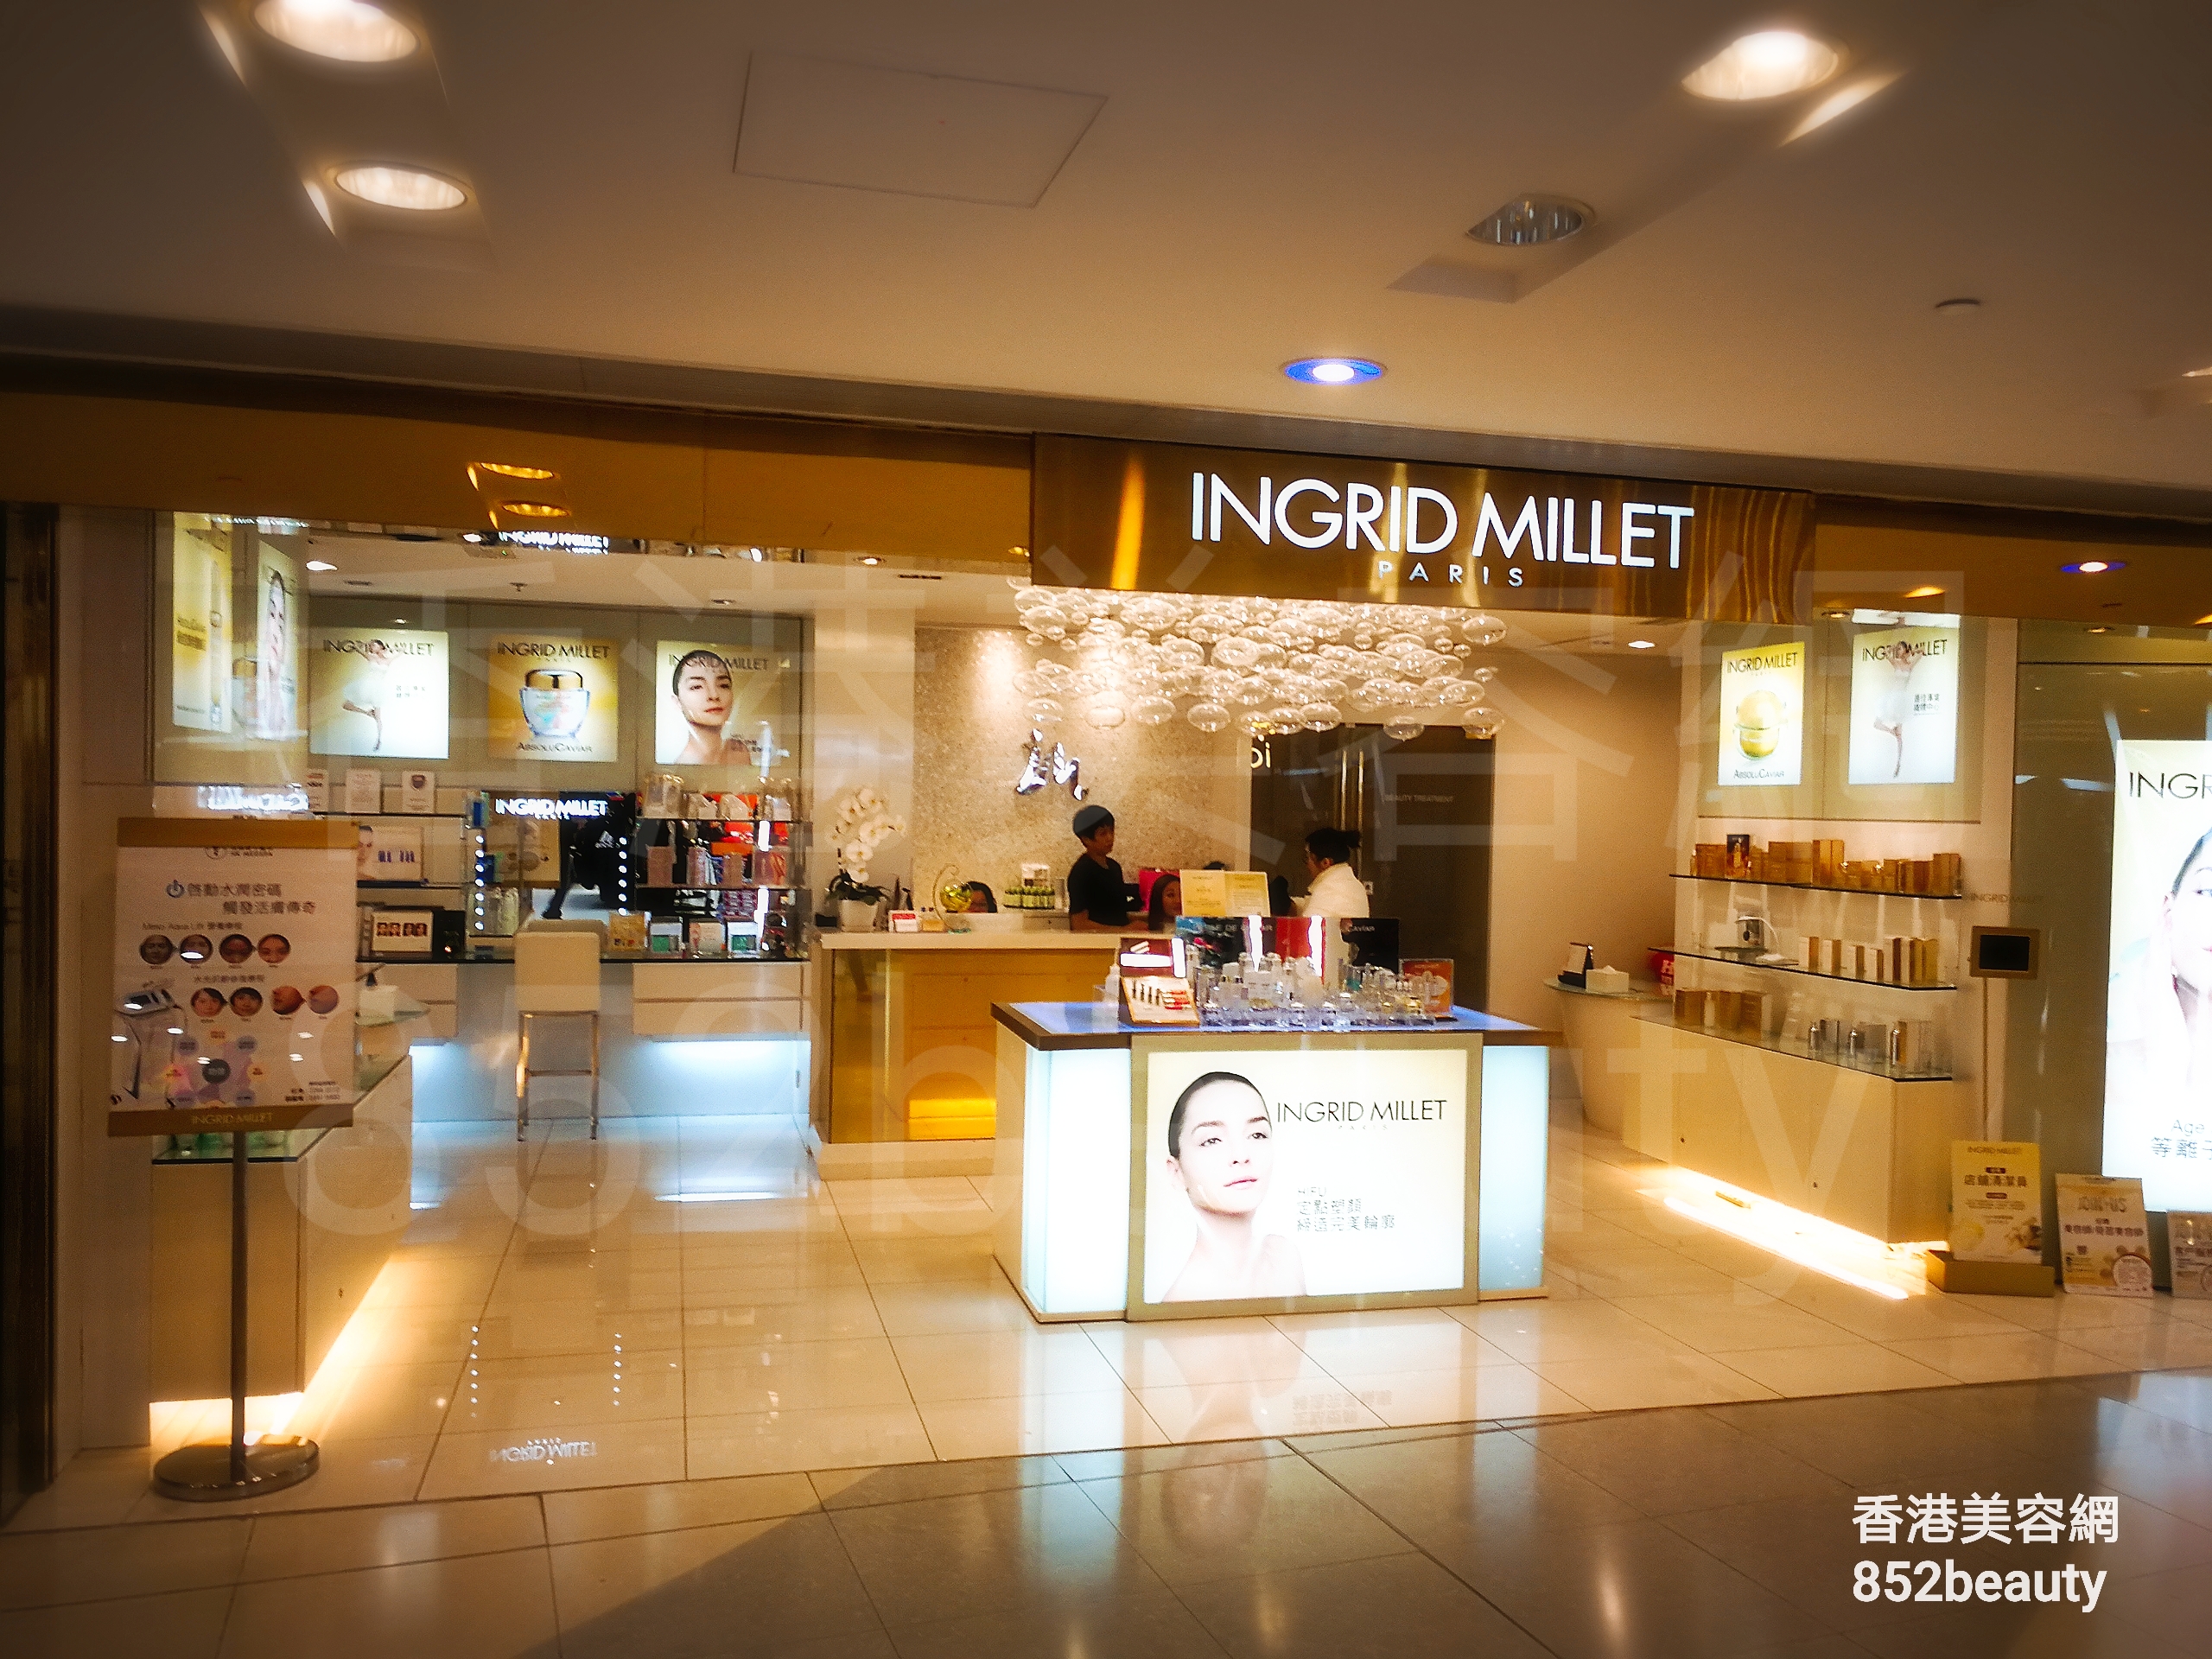 香港美容網 Hong Kong Beauty Salon 美容院 / 美容師: INGRID MILLET PARIS (樂富)